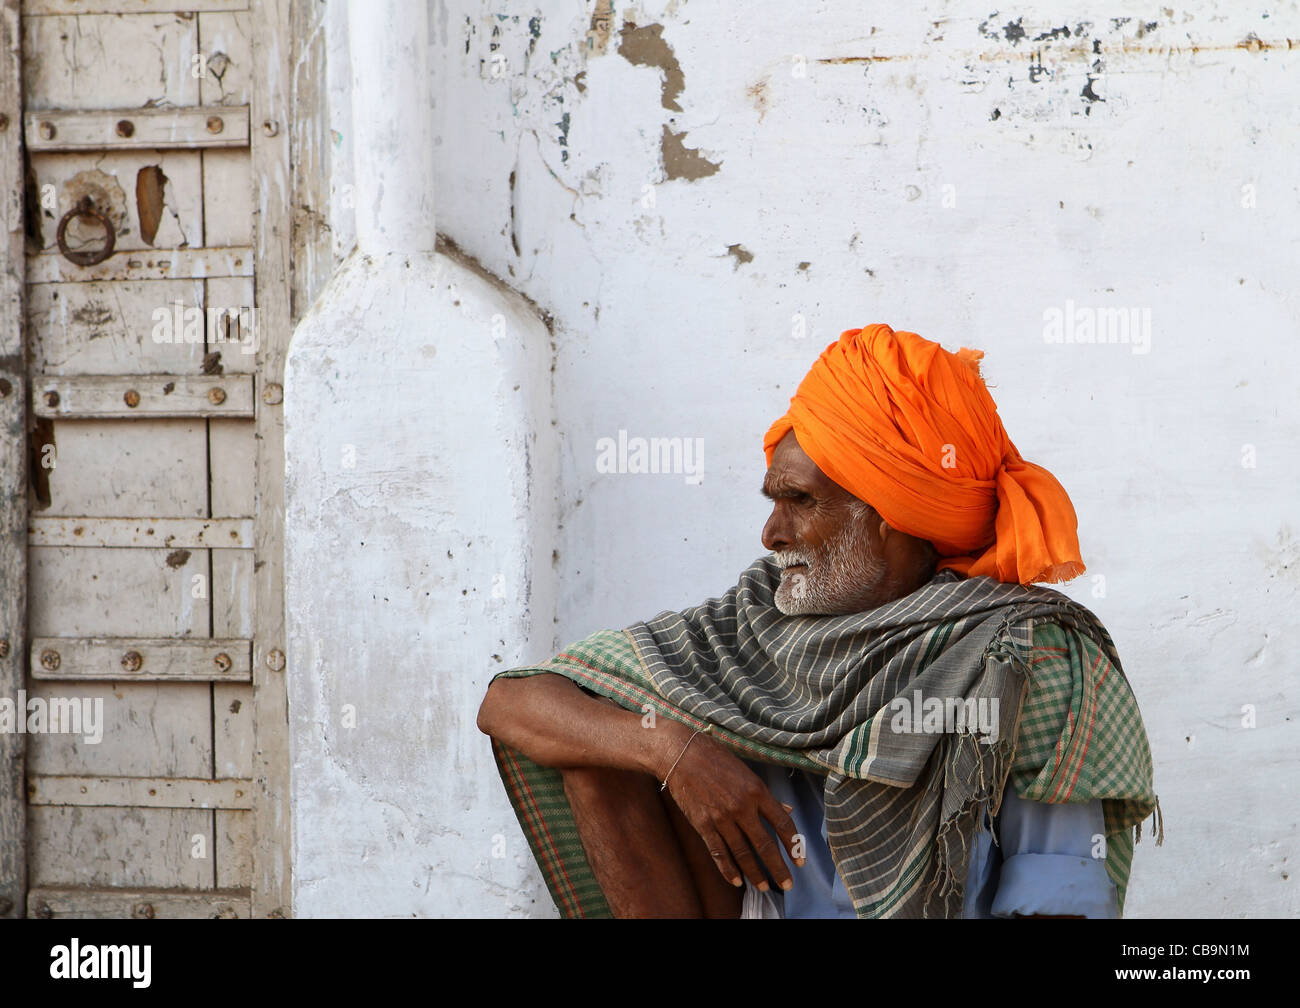 Indian man in orange turban resting. Rajasthan. India Stock Photo